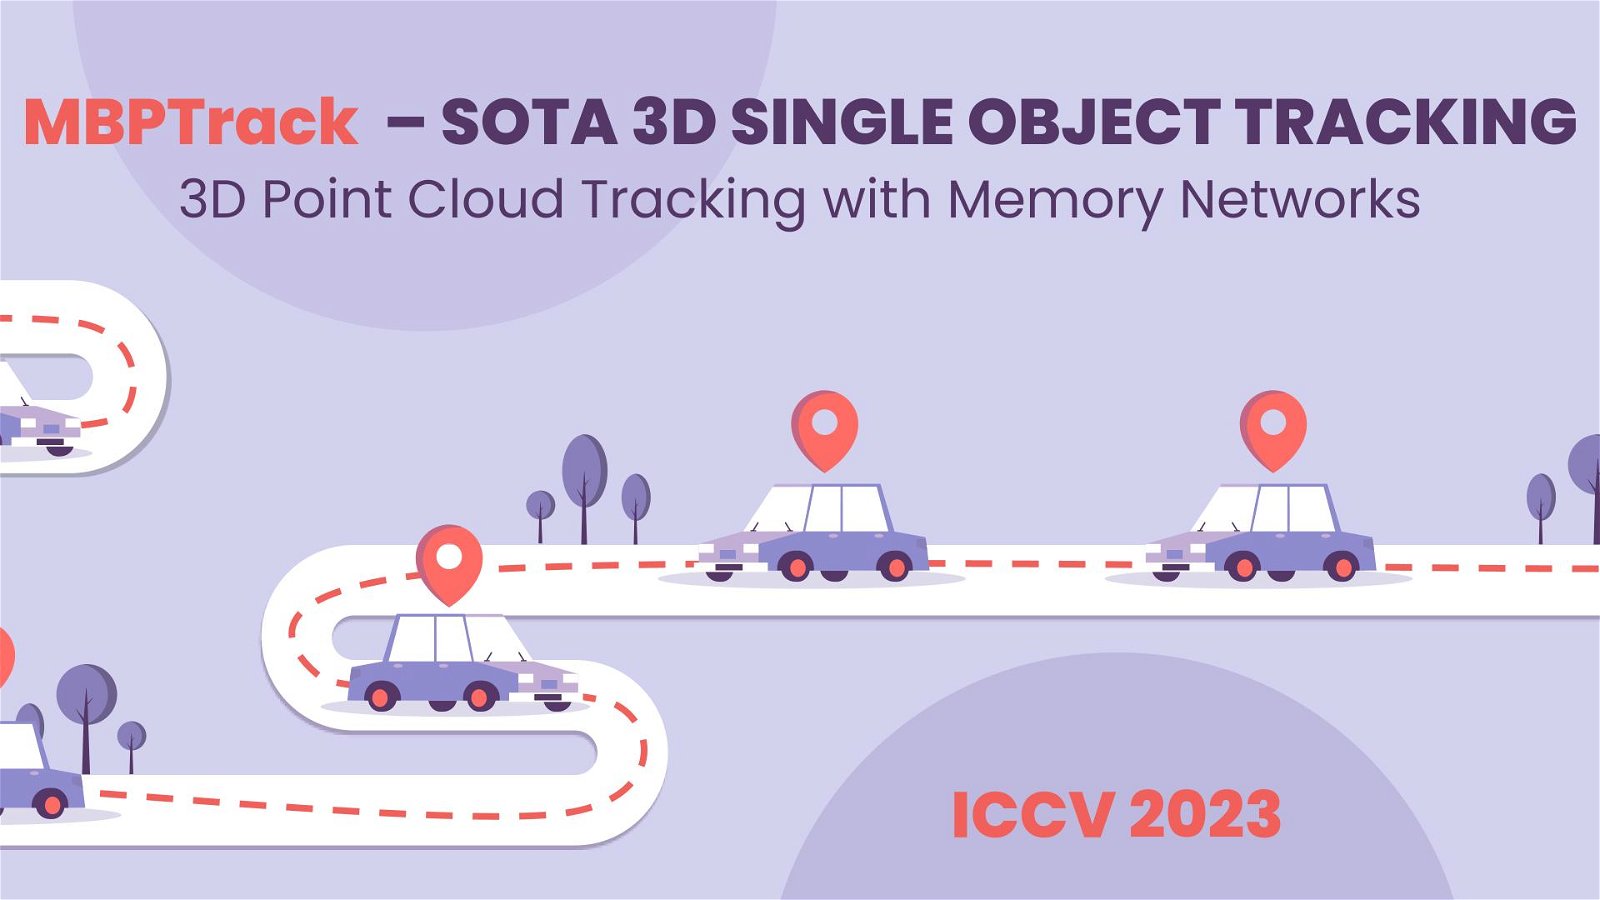 MBPTrack Tutorial - SOTA 3D Point Cloud Object Tracking in 2023 for LiDAR & Radar